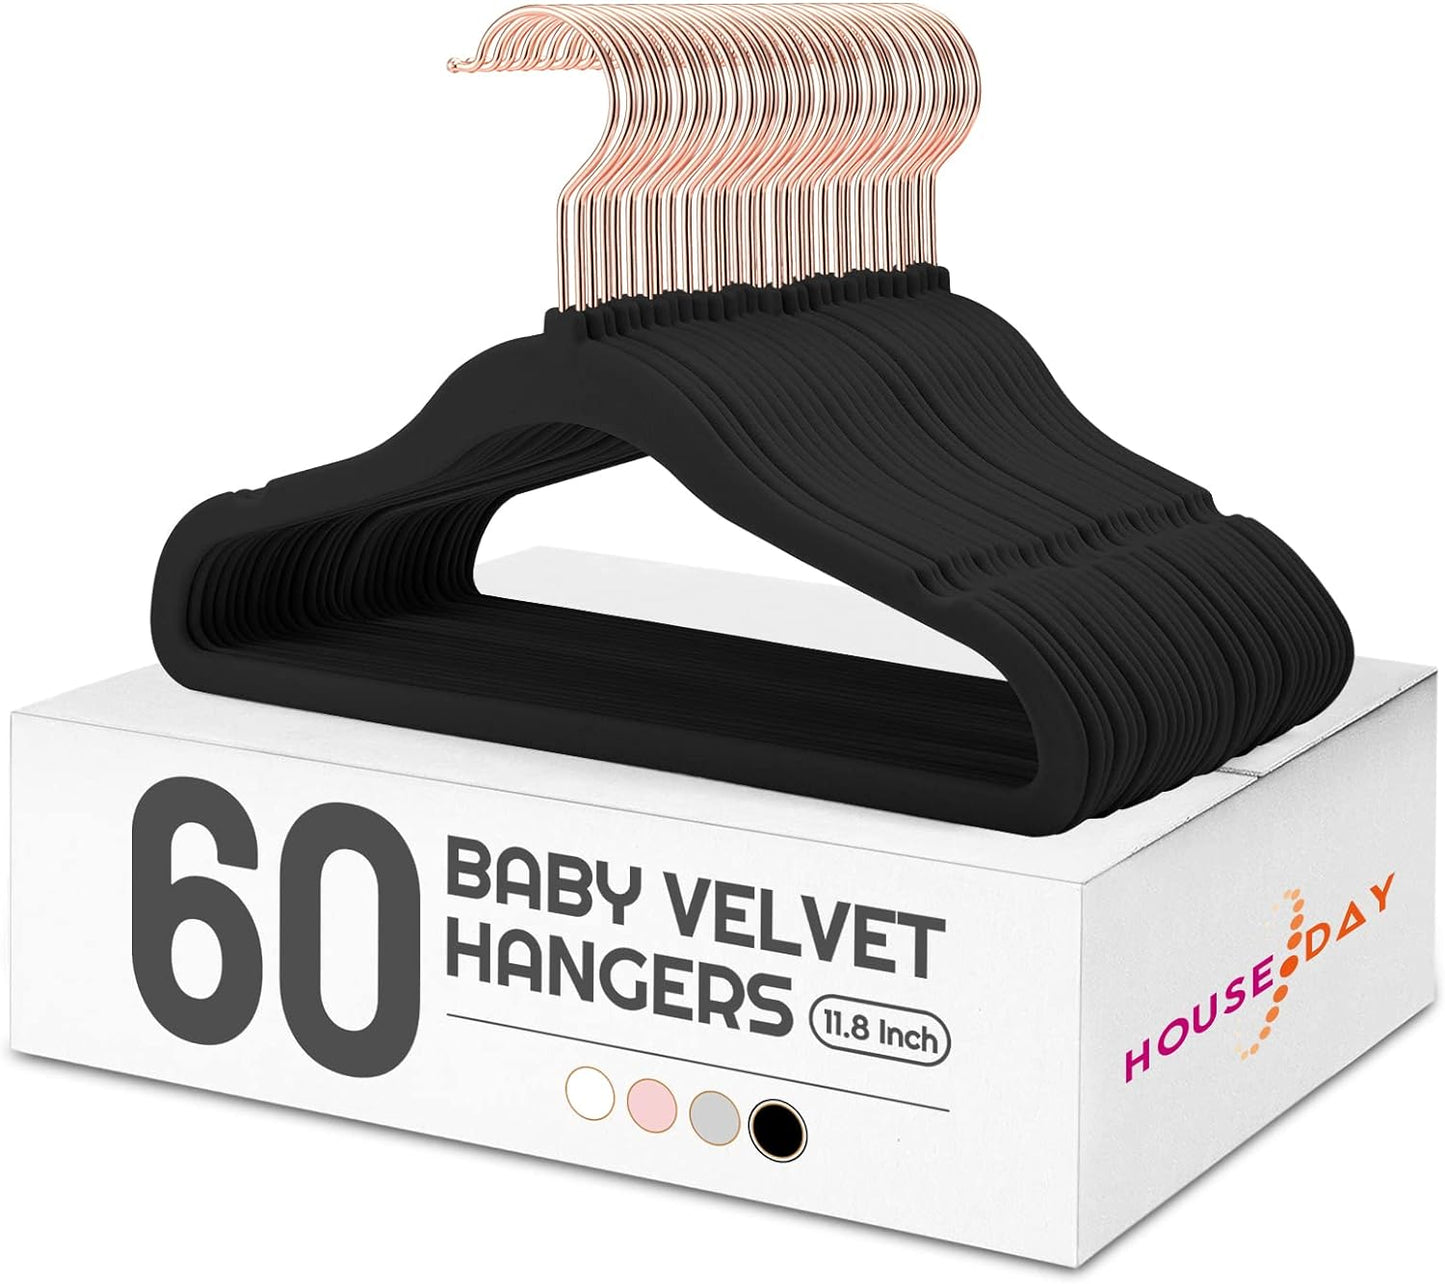 HOUSE DAY 11.8 inch Velvet Baby Hangers Black 60 Pack